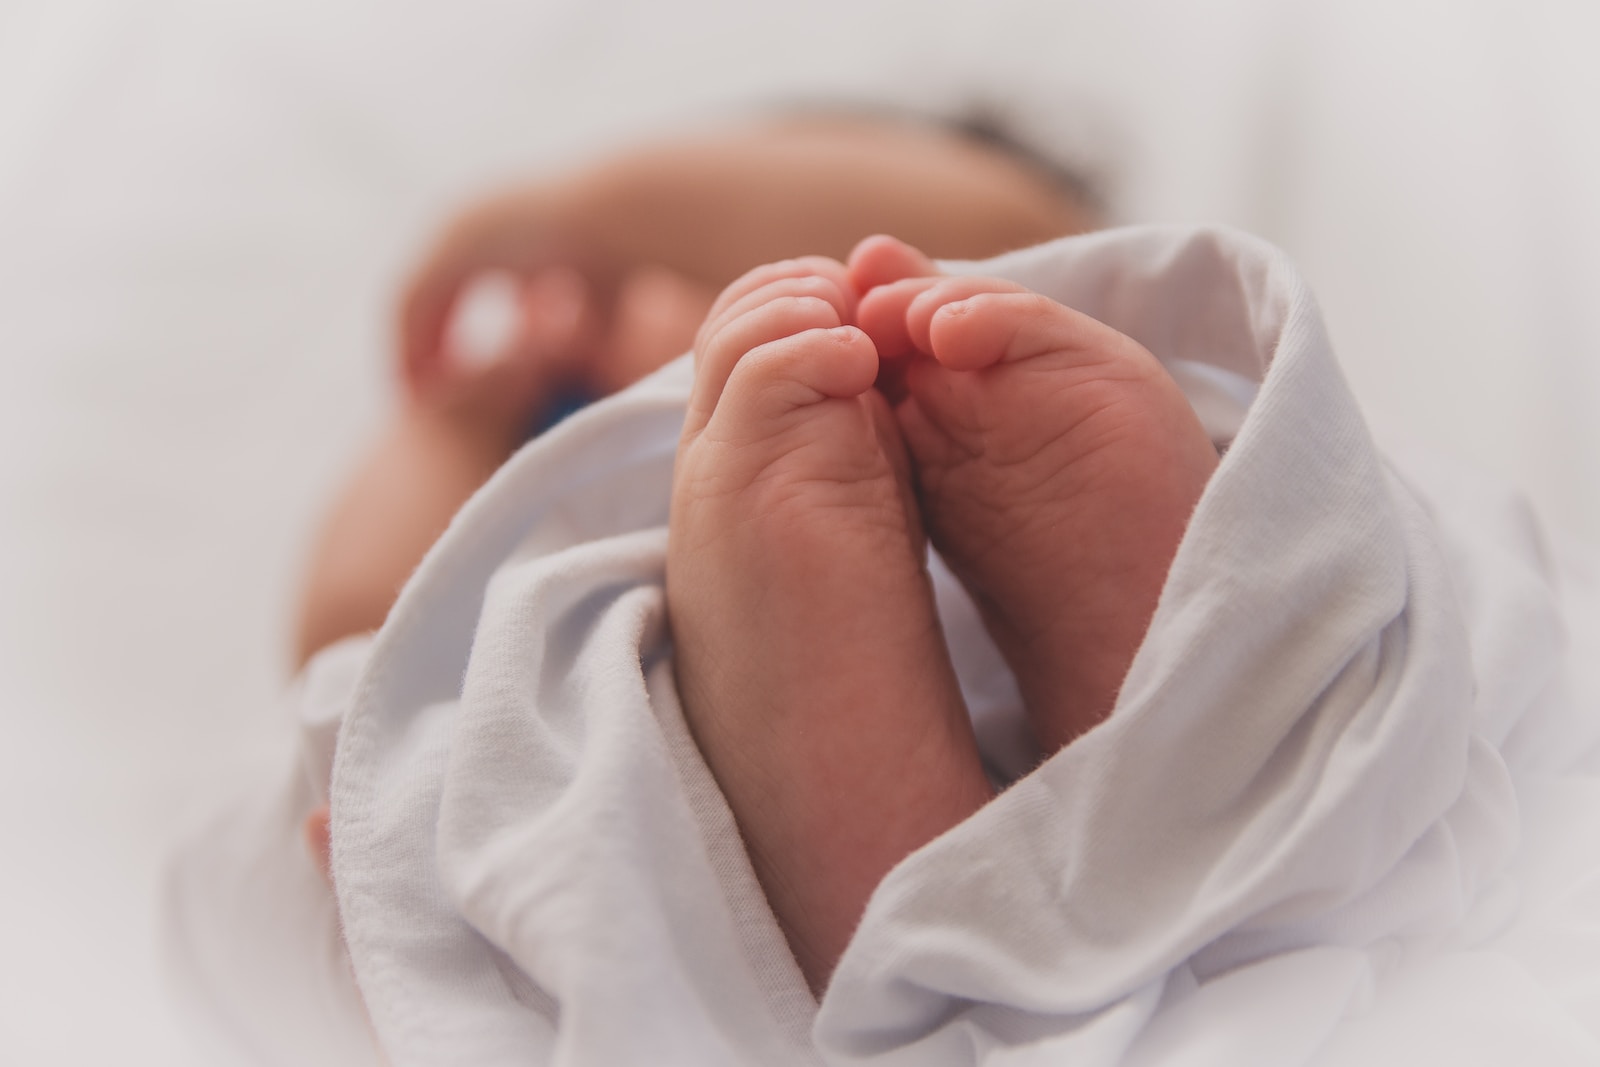 התינוק נפגע במהלך הלידה- האם אפשר לתבוע על רשלנות רפואית?